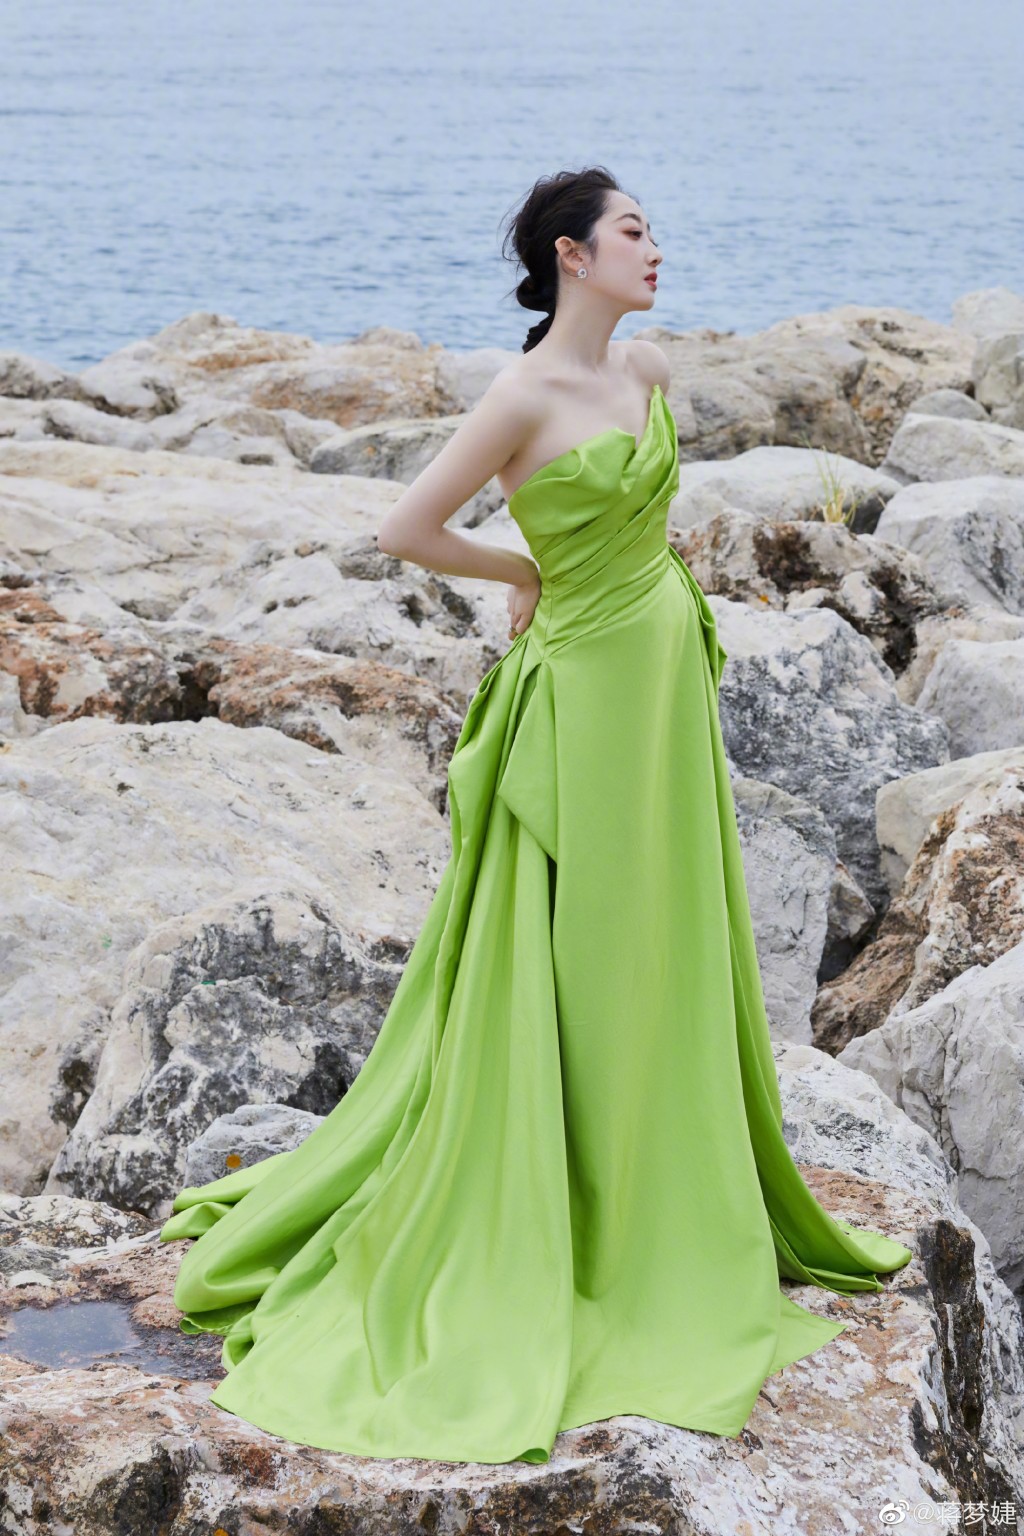 蒋梦婕绿色抹胸裙优雅大气海边写真图片